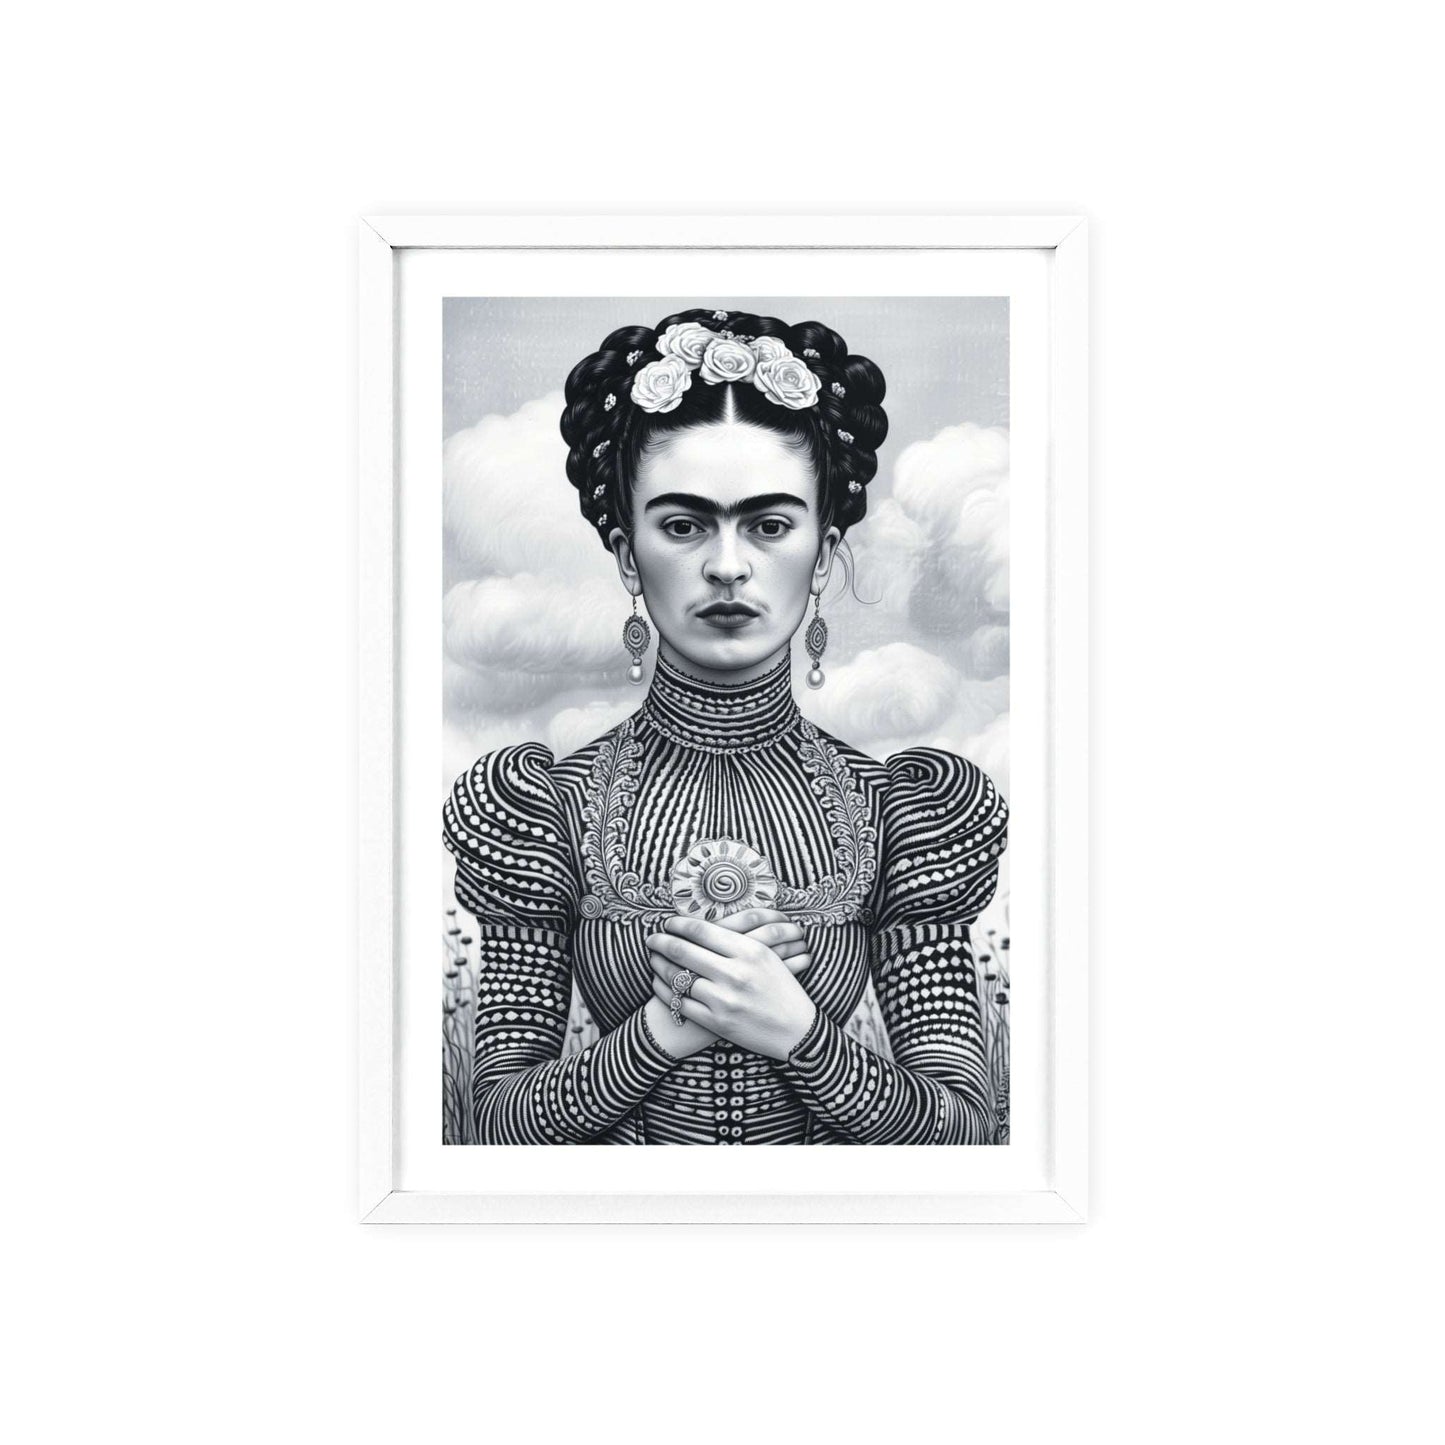  Frida Kahlo Black & White Wall Art! Modern home decor